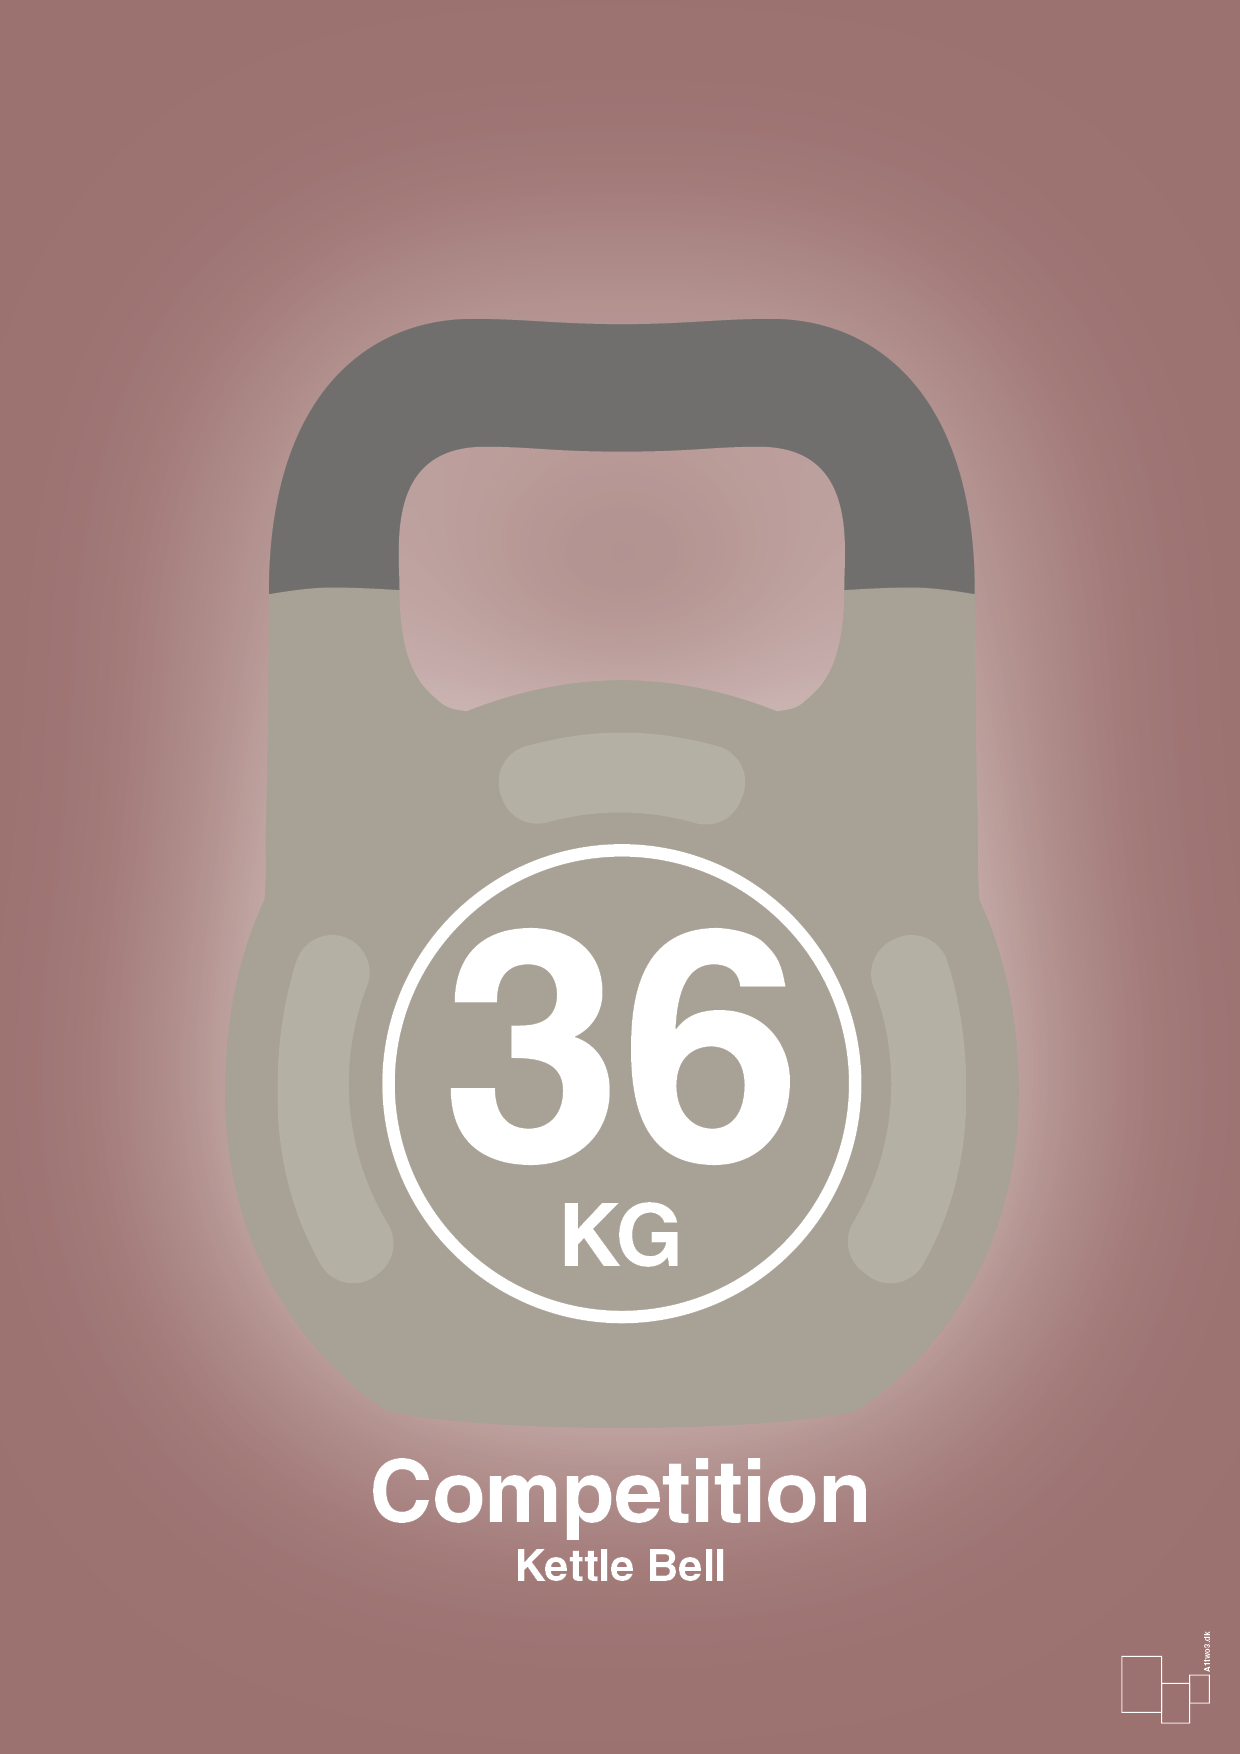 kettle bell 36 kg - competition color - Plakat med Grafik i Plum